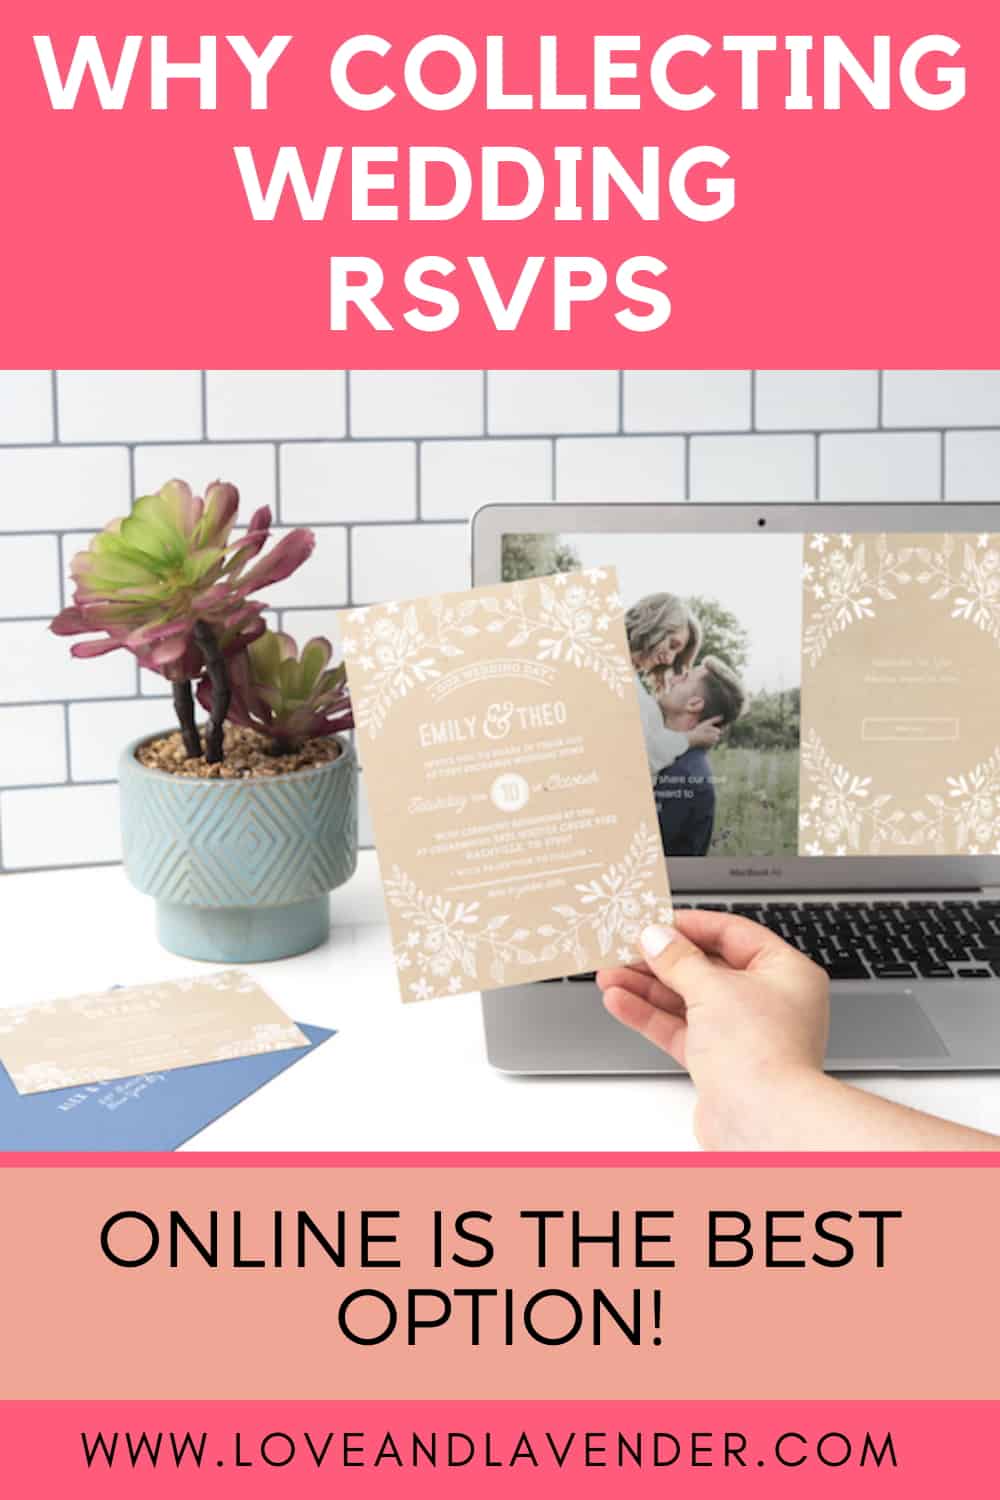 Pin Pinterest - Raccolta di RSVP di nozze online